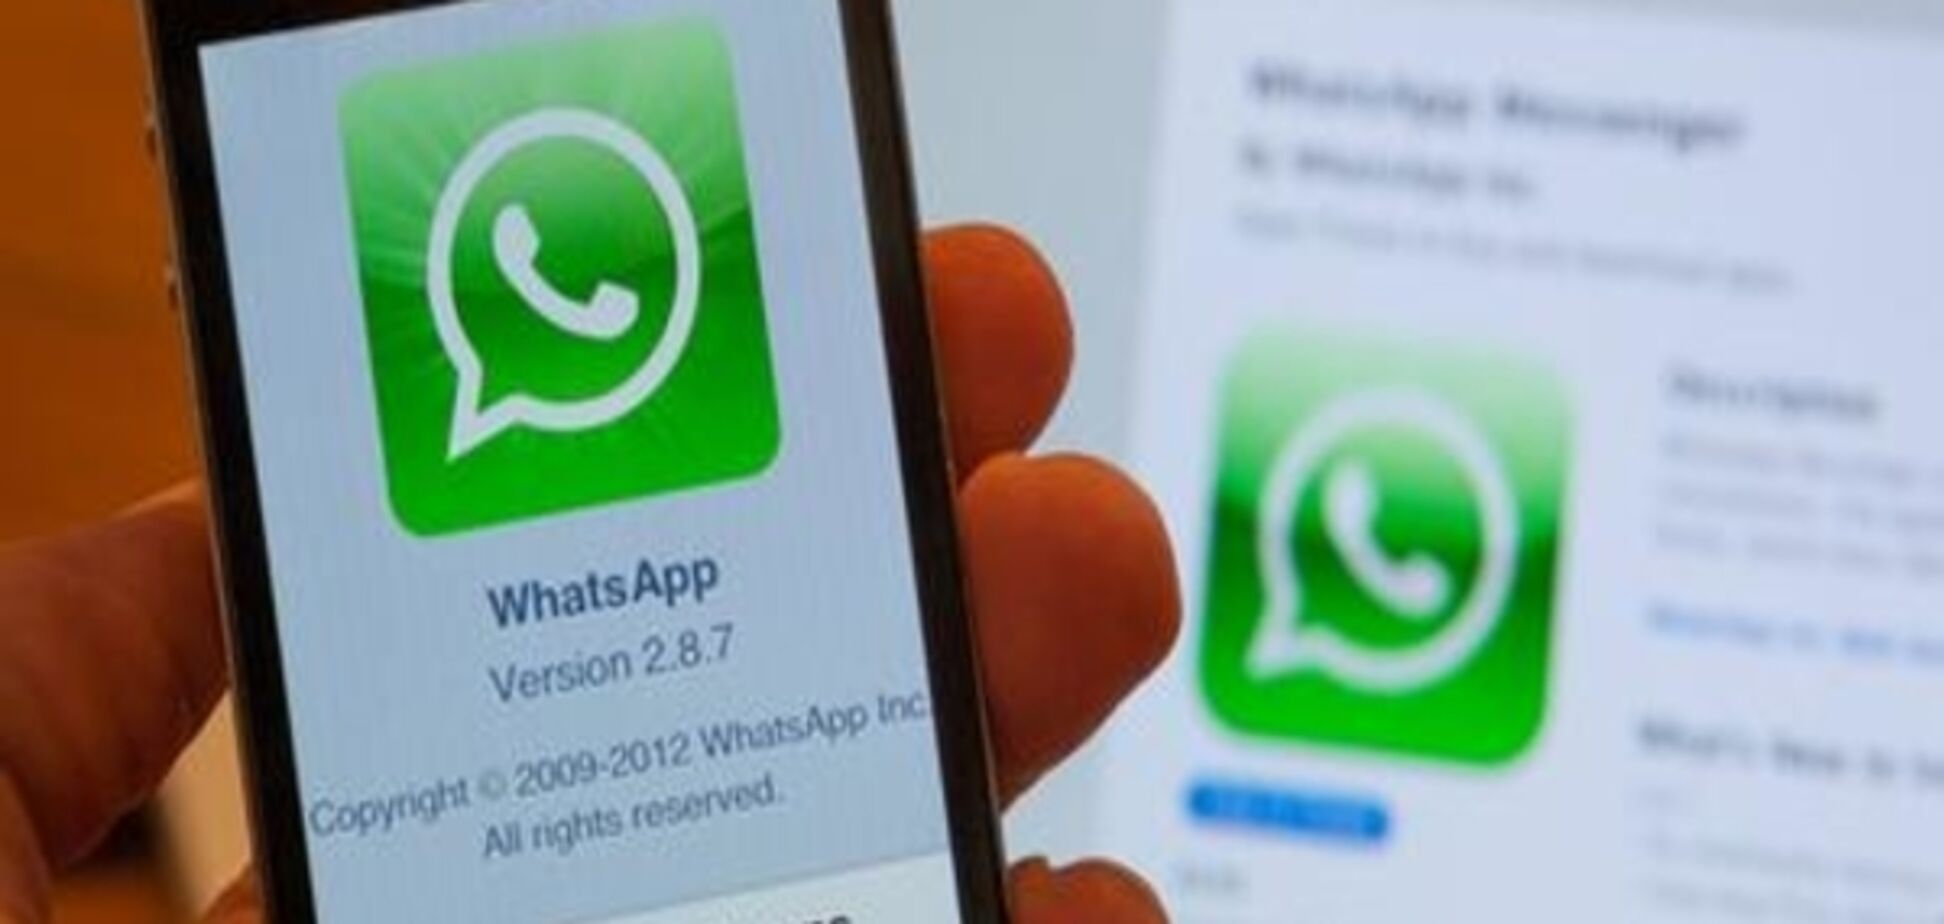 Єврокомісія оштрафувала Facebook на 110 мільйонів євро через WhatsApp